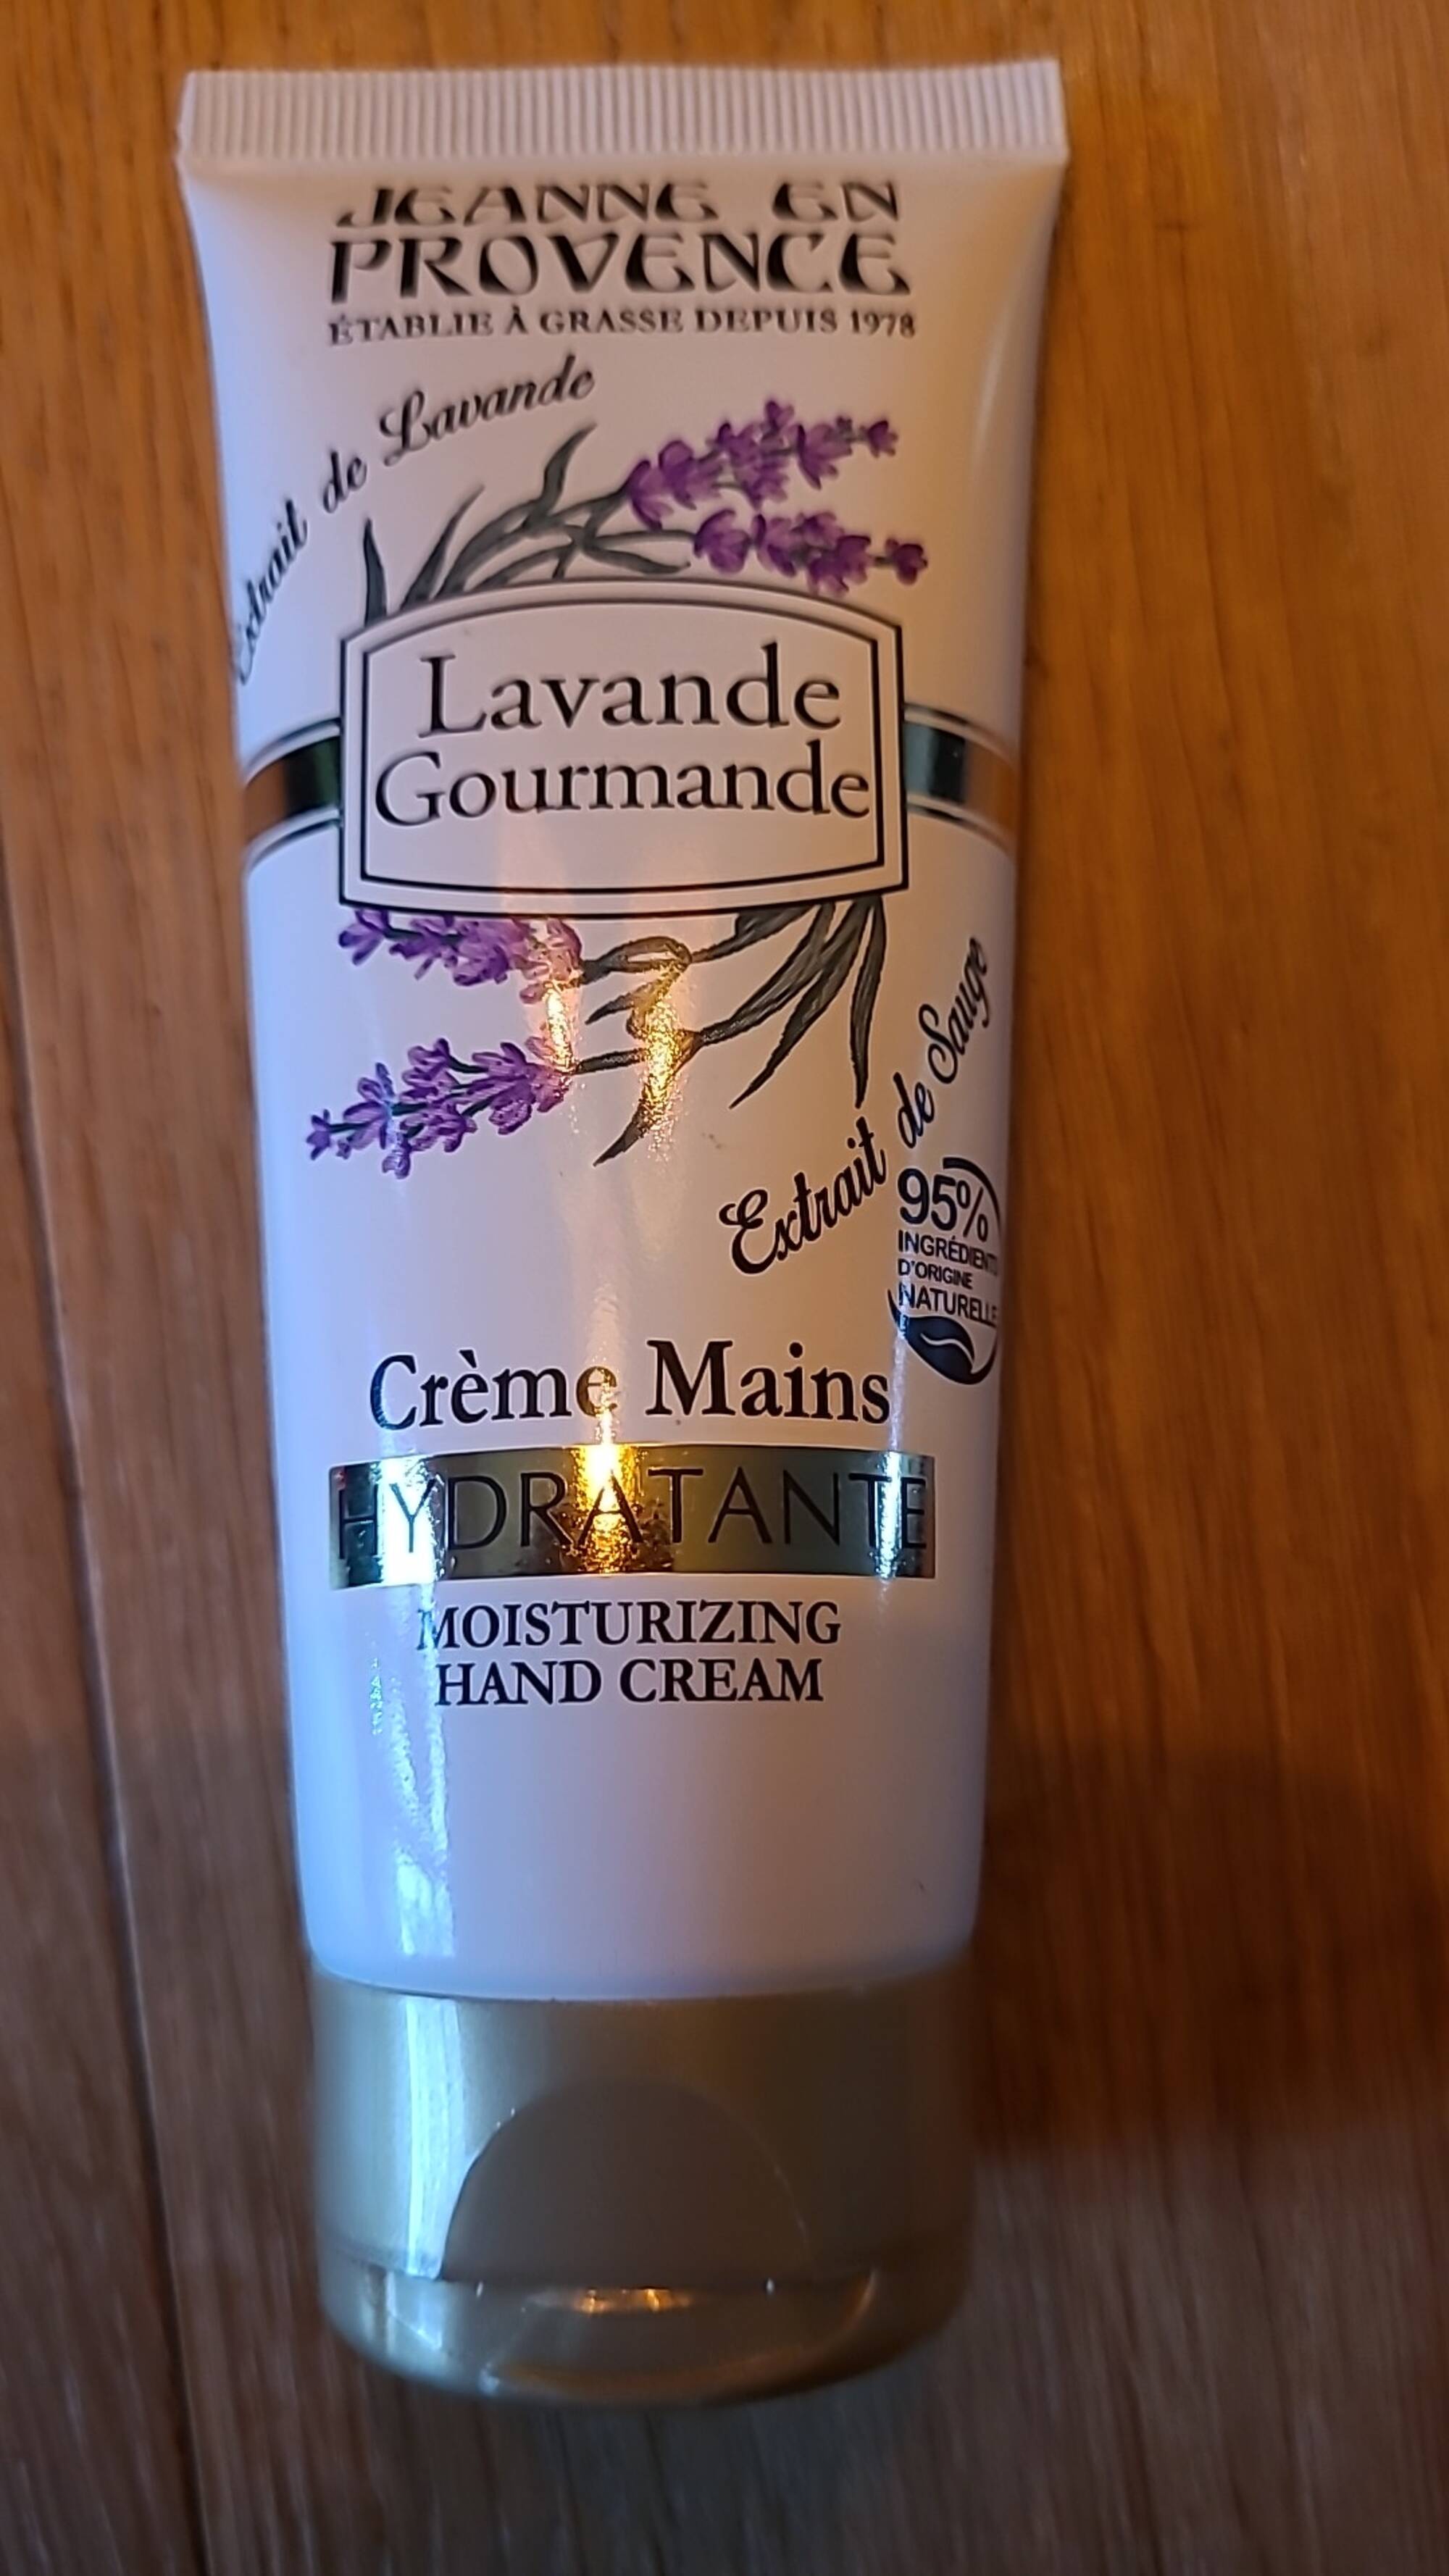 JEANNE EN PROVENCE - Lavande gourmande - Crème mains hydratante